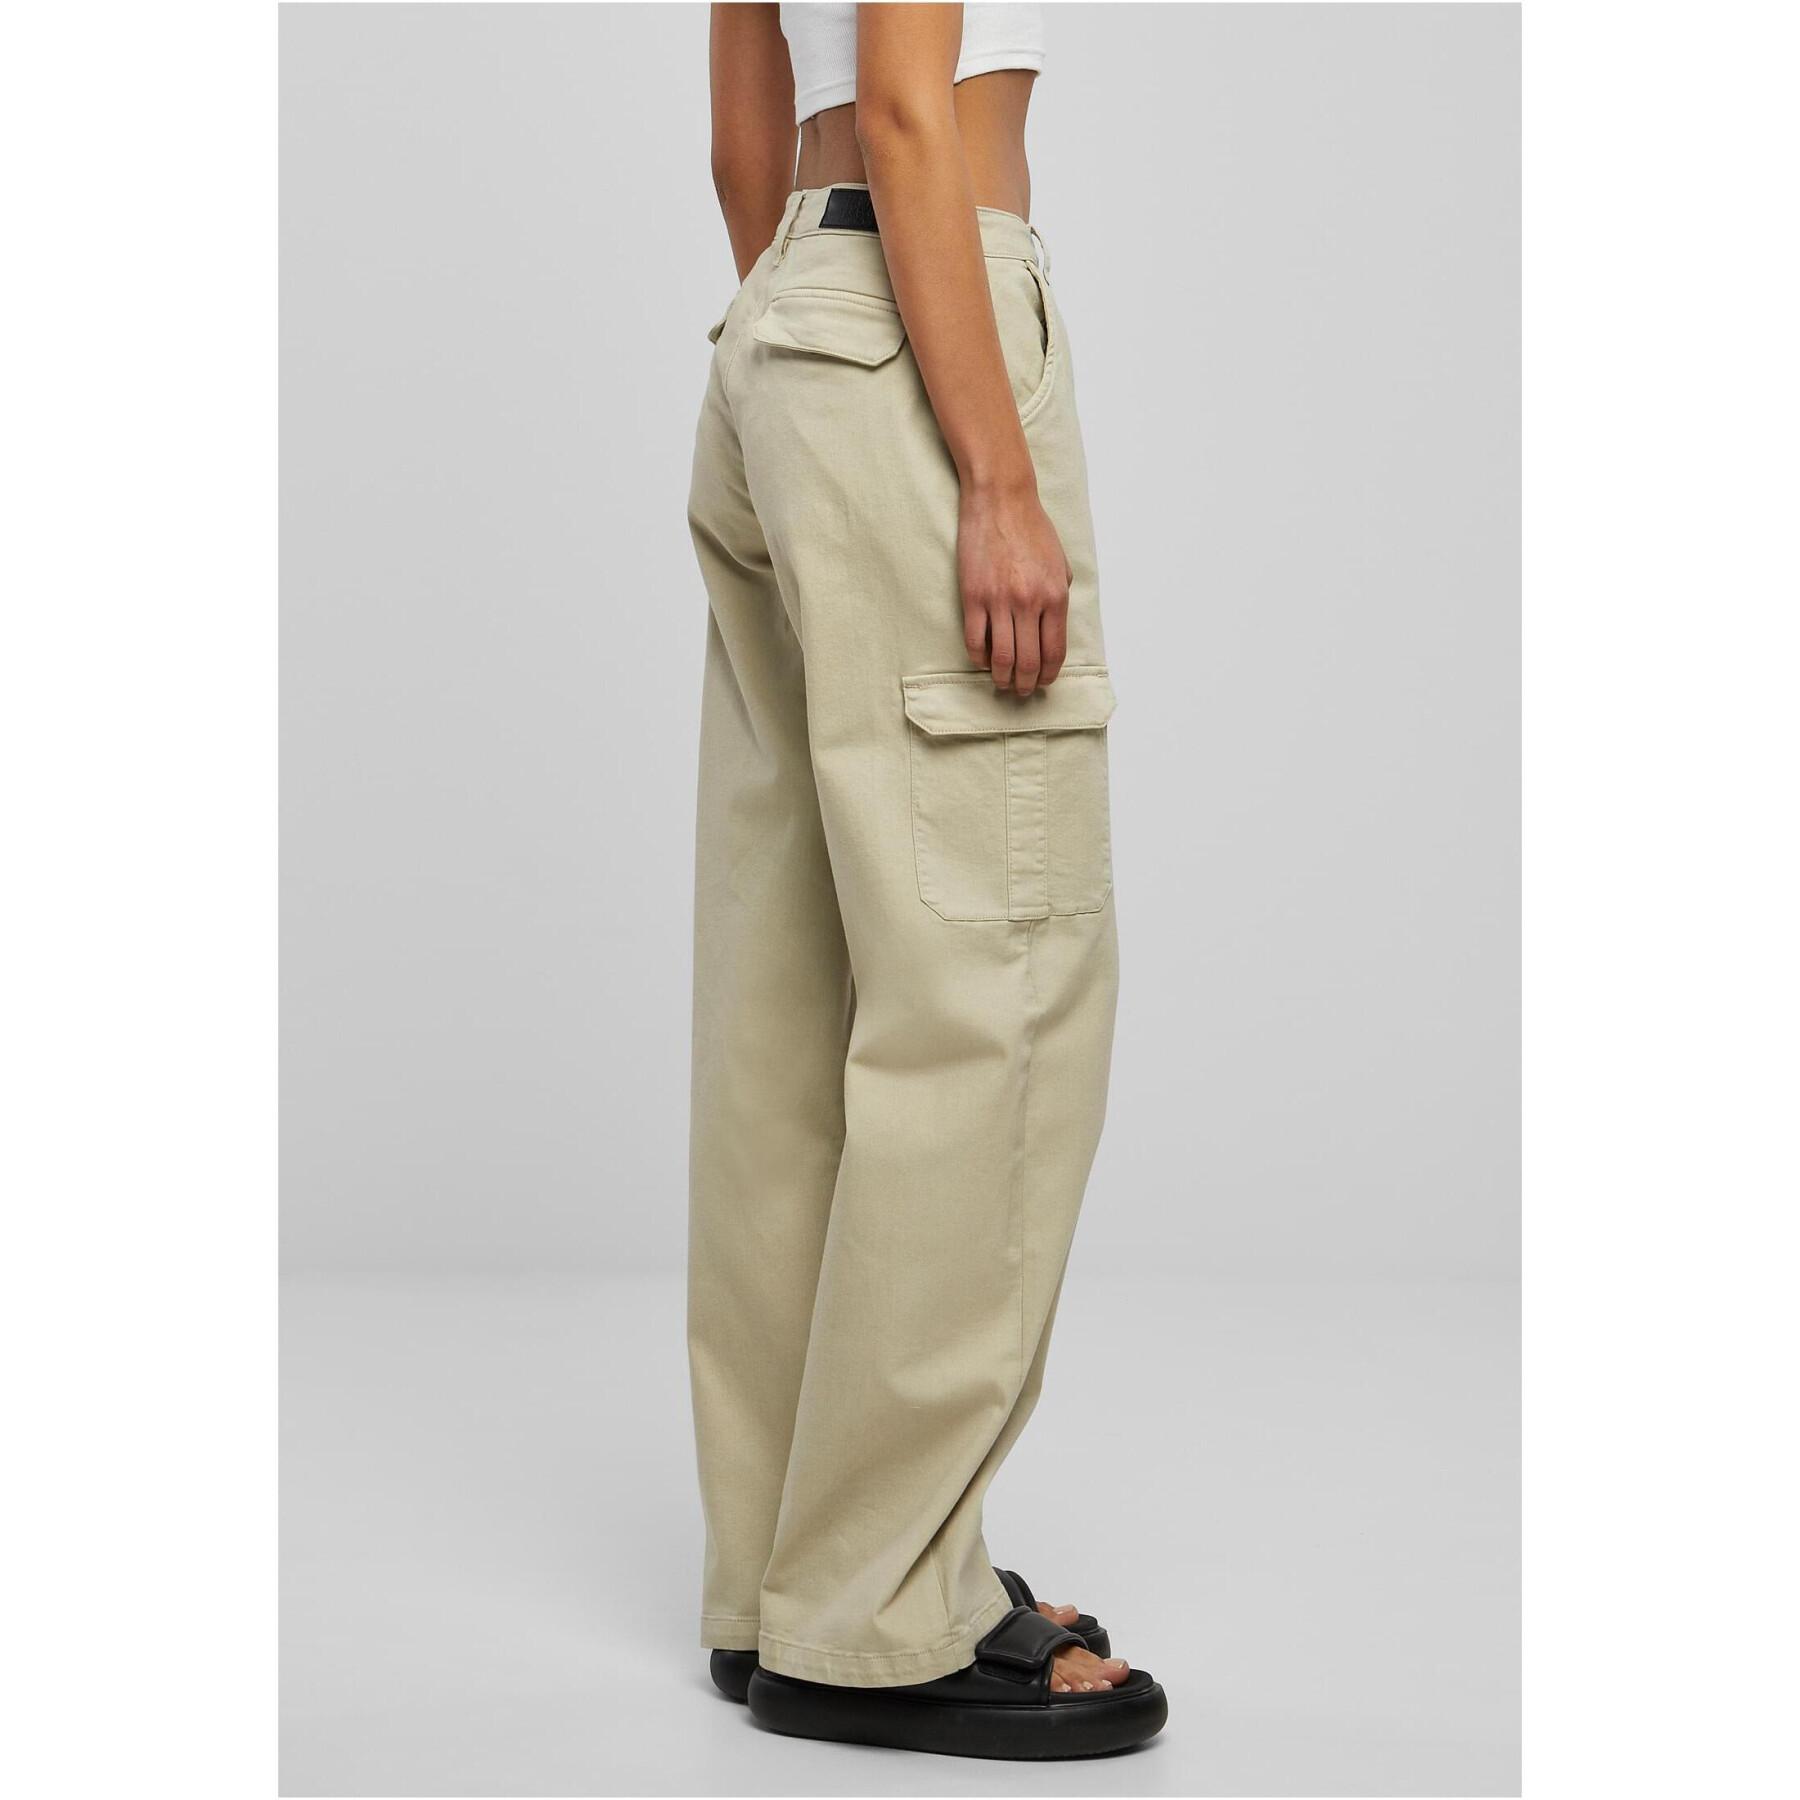 Pants cargo droit taille haute en denim grandes tailles femme Urban Classics